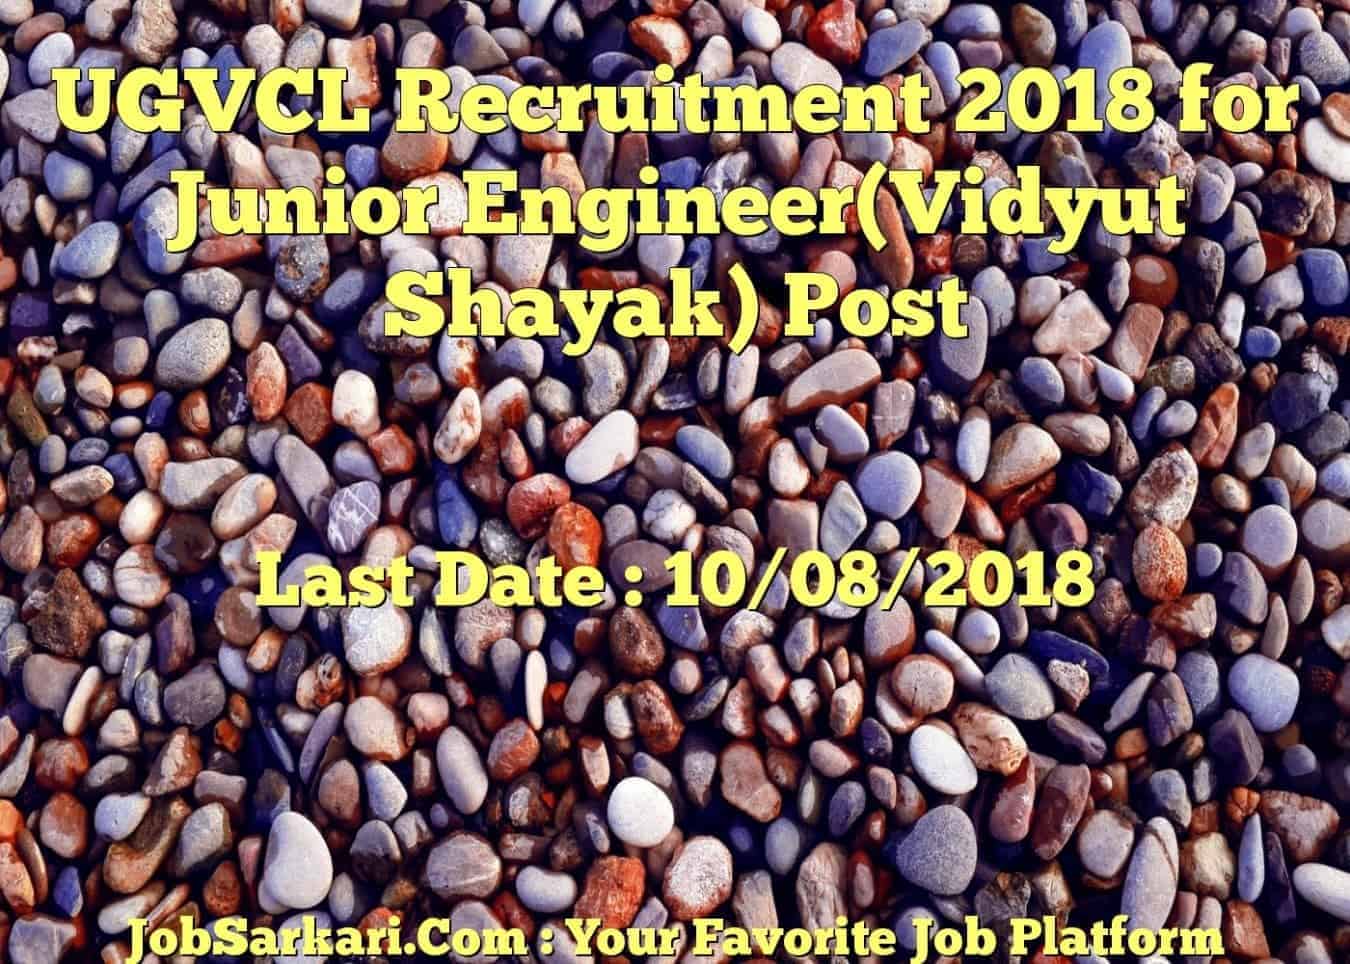 UGVCL Recruitment 2018 for Junior Engineer(Vidyut Shayak) Post